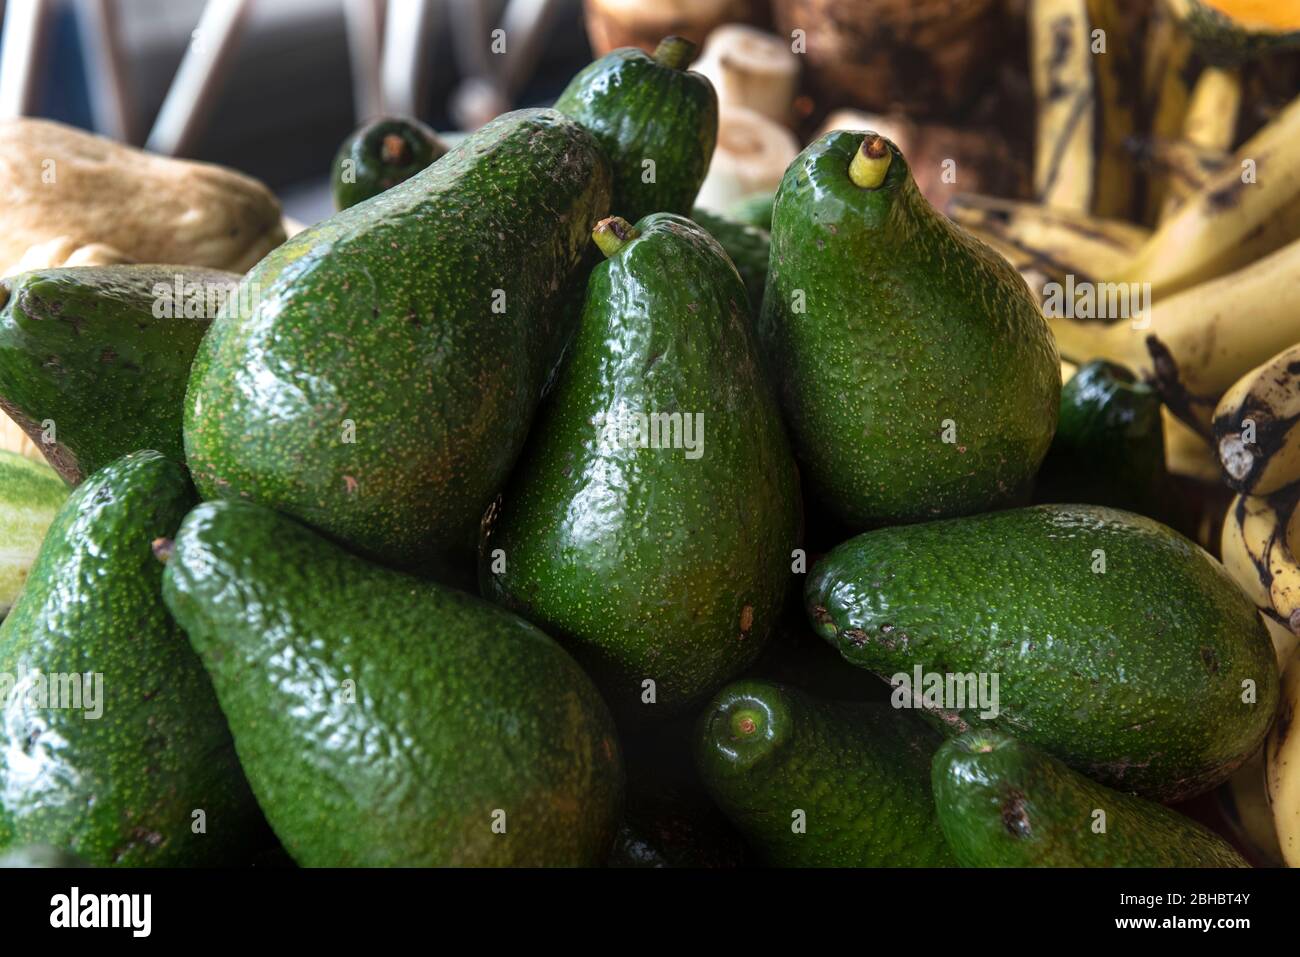 Caribbean, Lesser Antilles, Martinique. Local market, avocados. Stock Photo